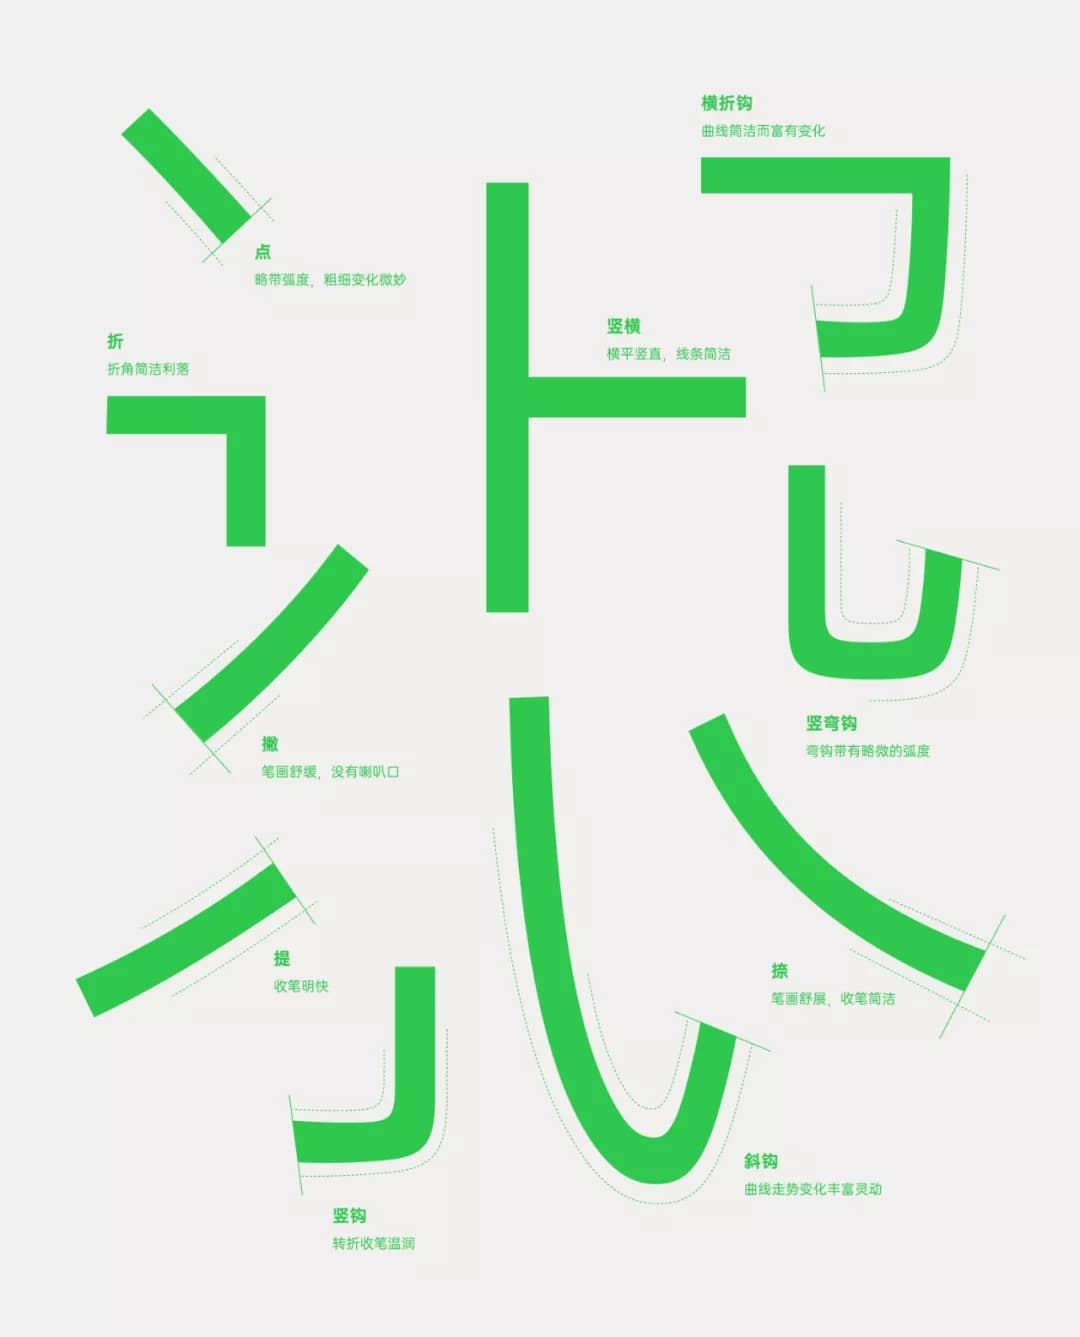 OPPO 全新品牌字體OPPO Sans正式發布 7